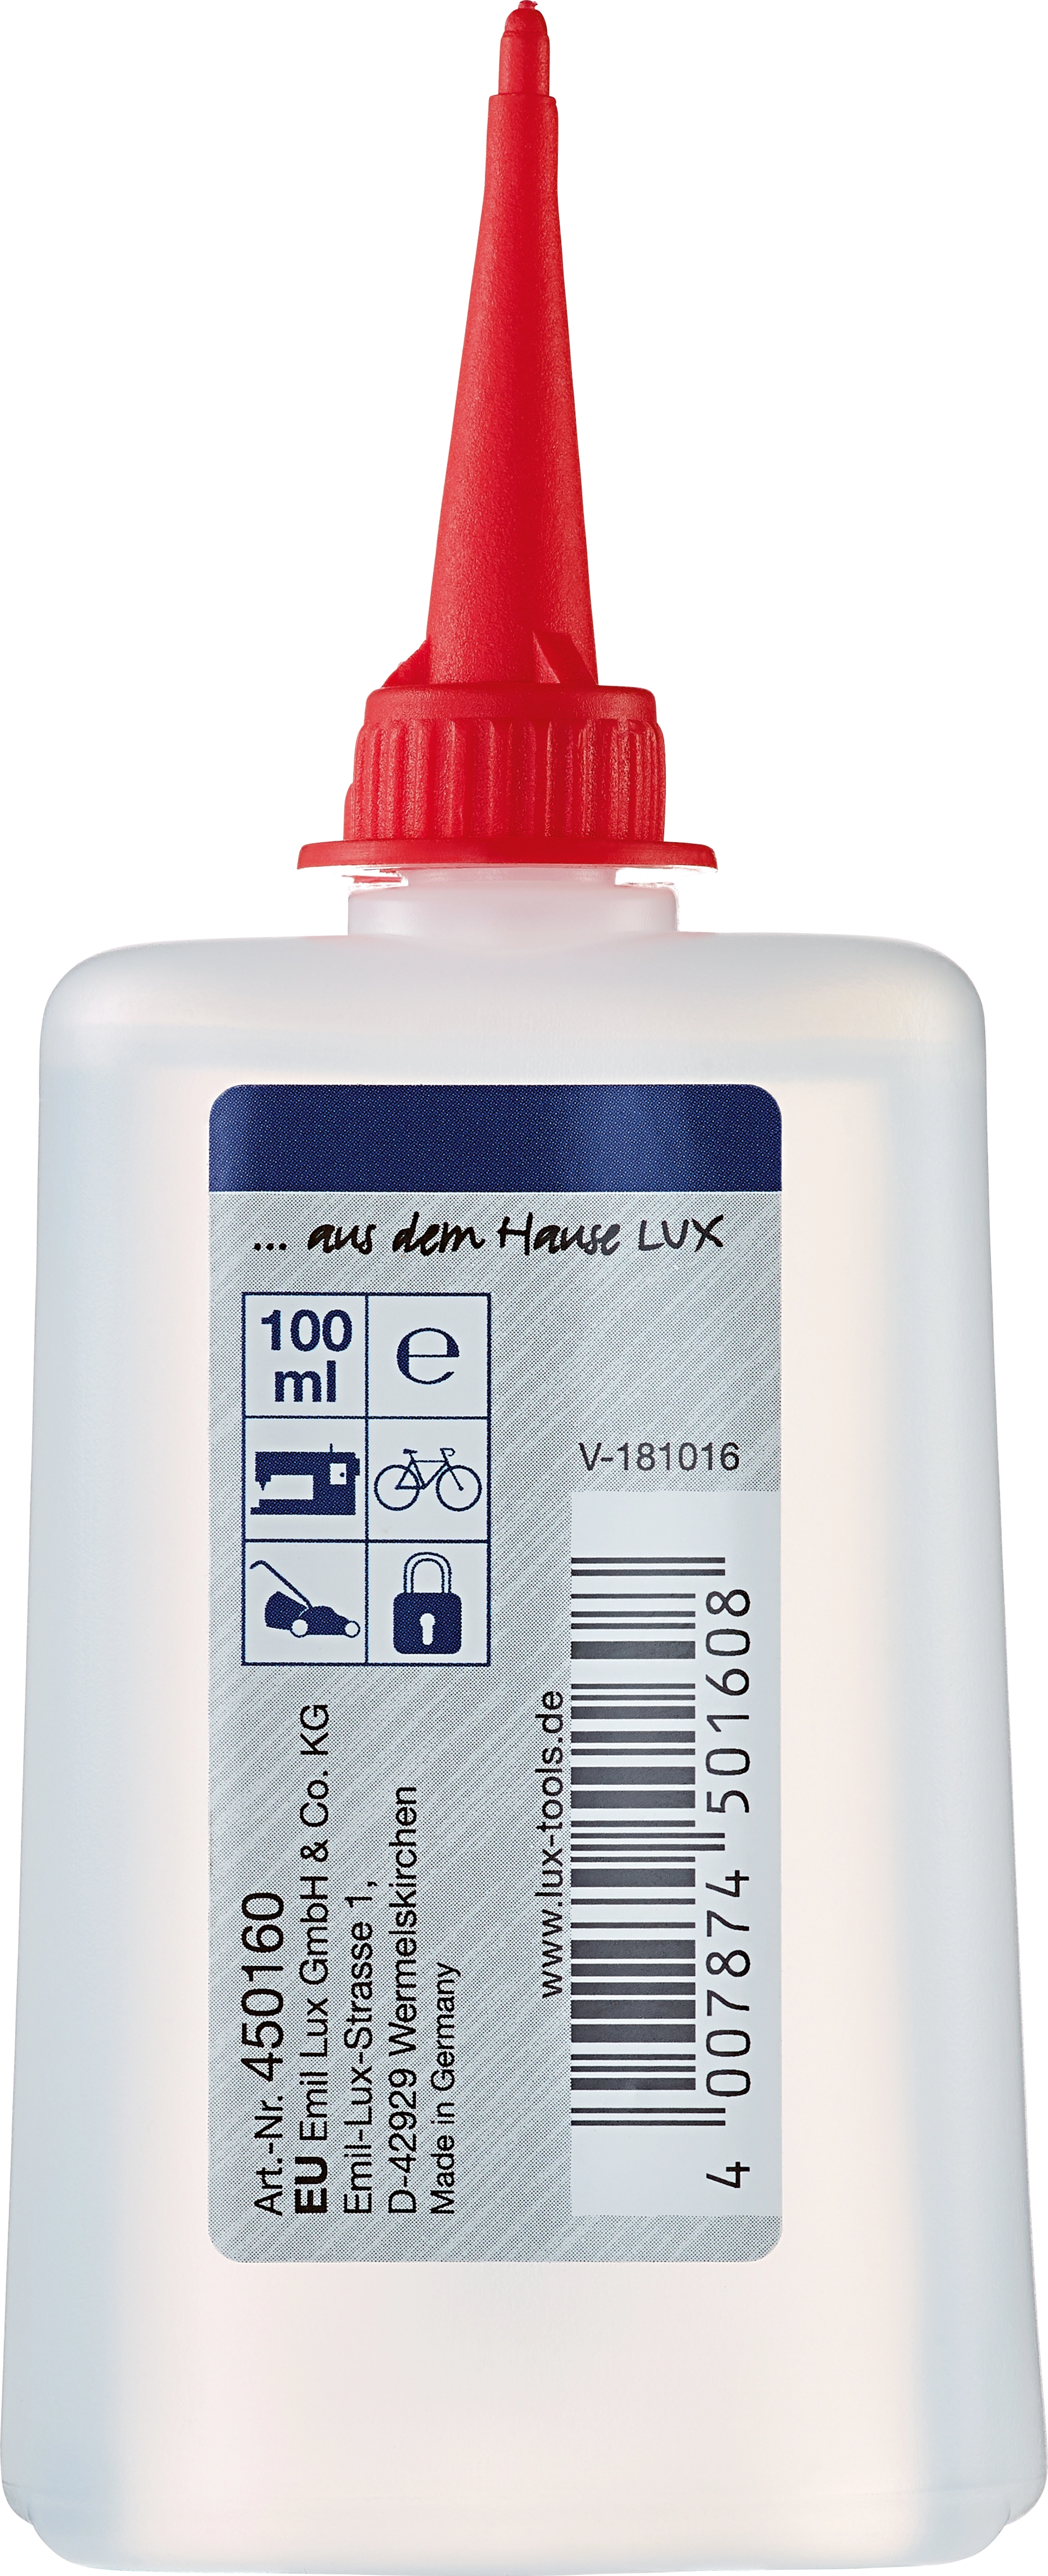 LUX Olio per uso domestico Classic 100 ml